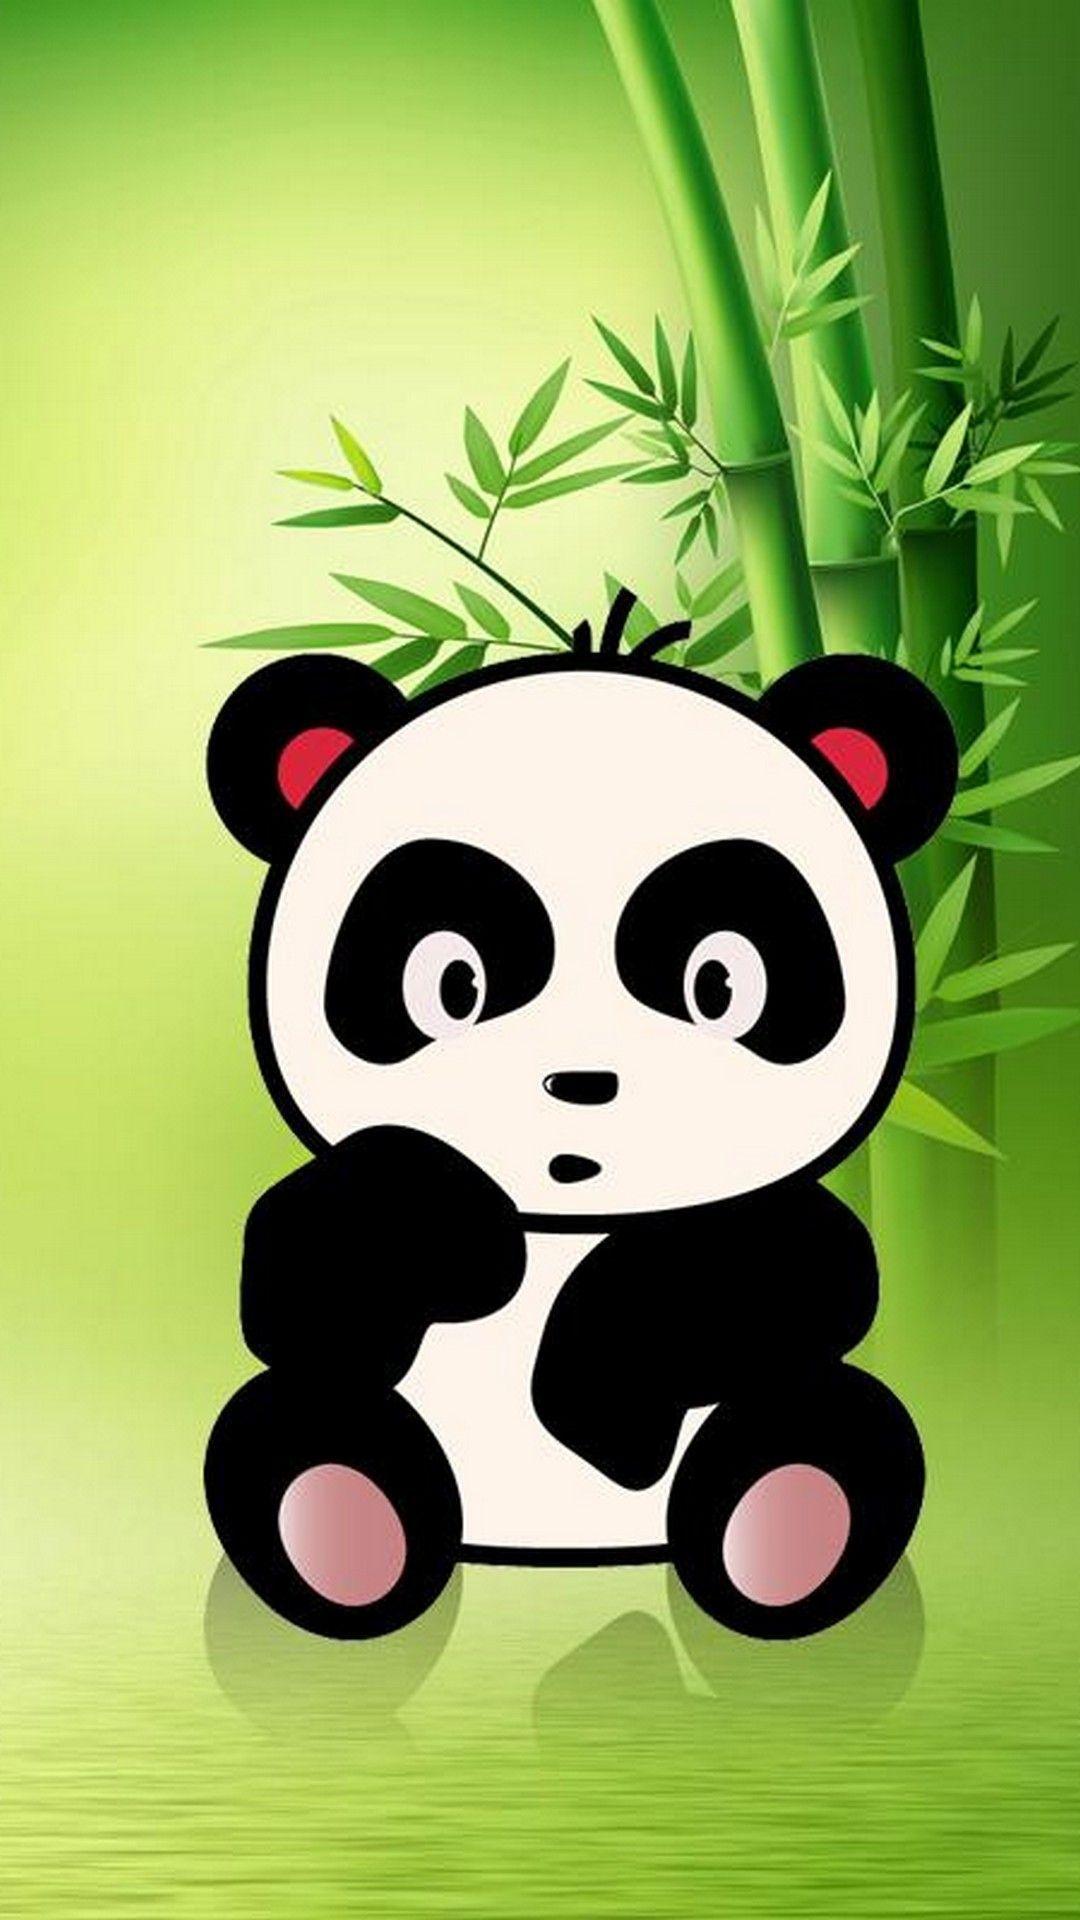 iPhone X Cute Panda Wallpaper. Best HD Wallpaper. Wallpapercute